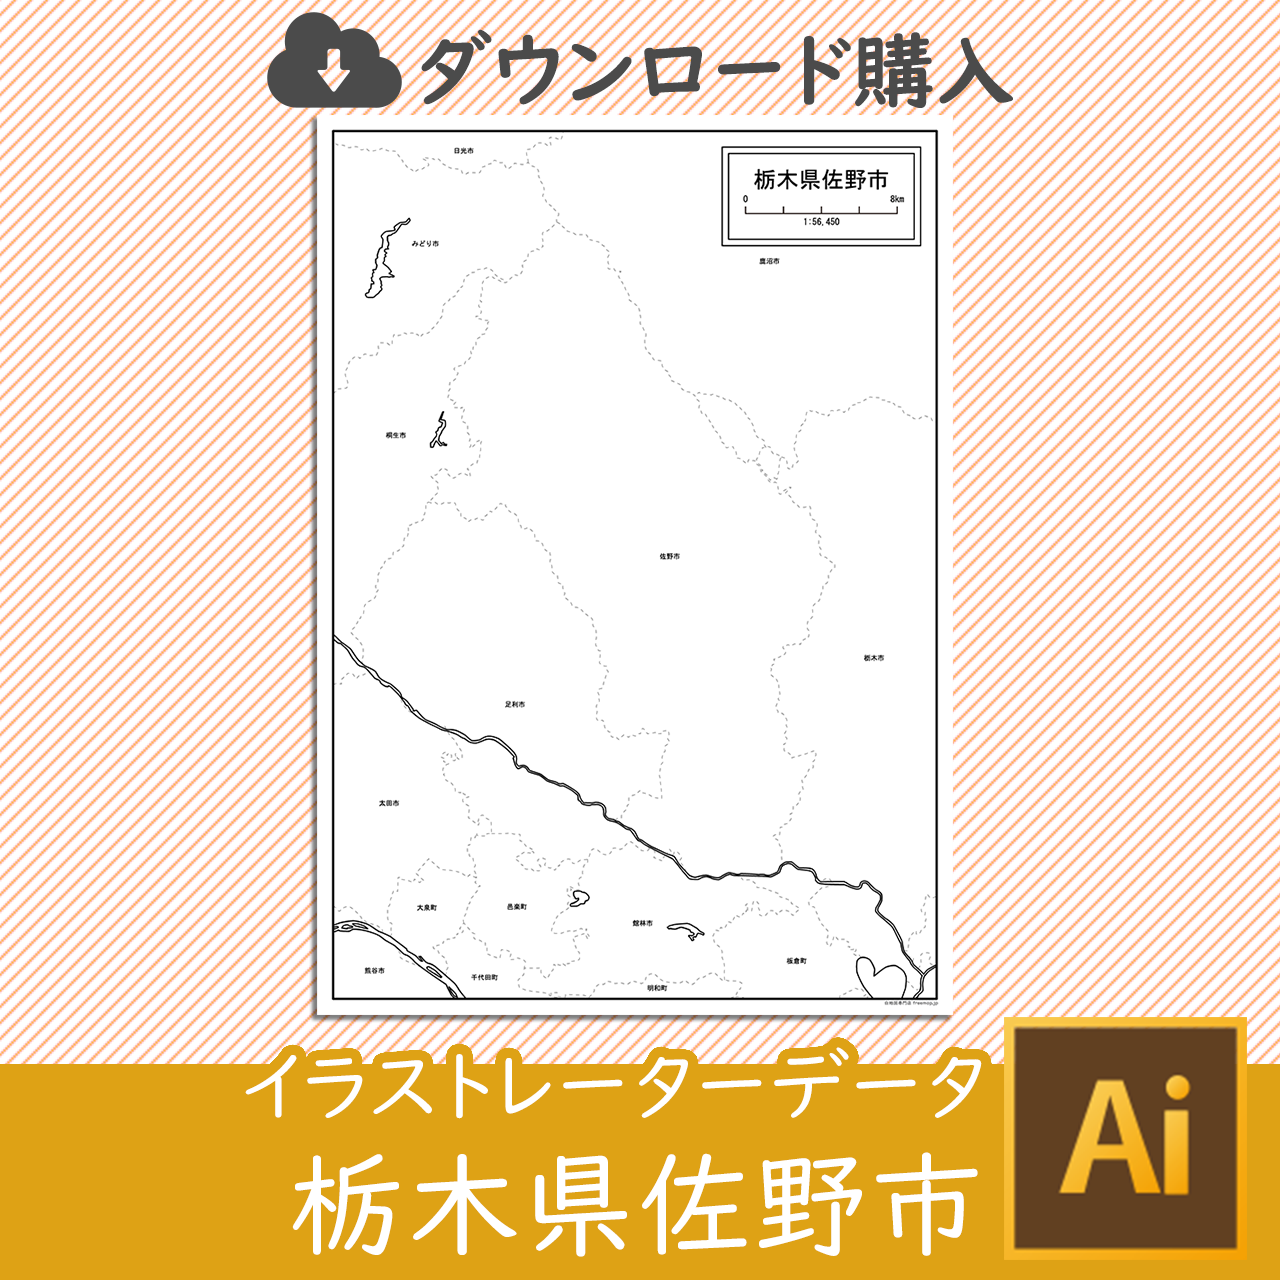 佐野市のaiデータのサムネイル画像